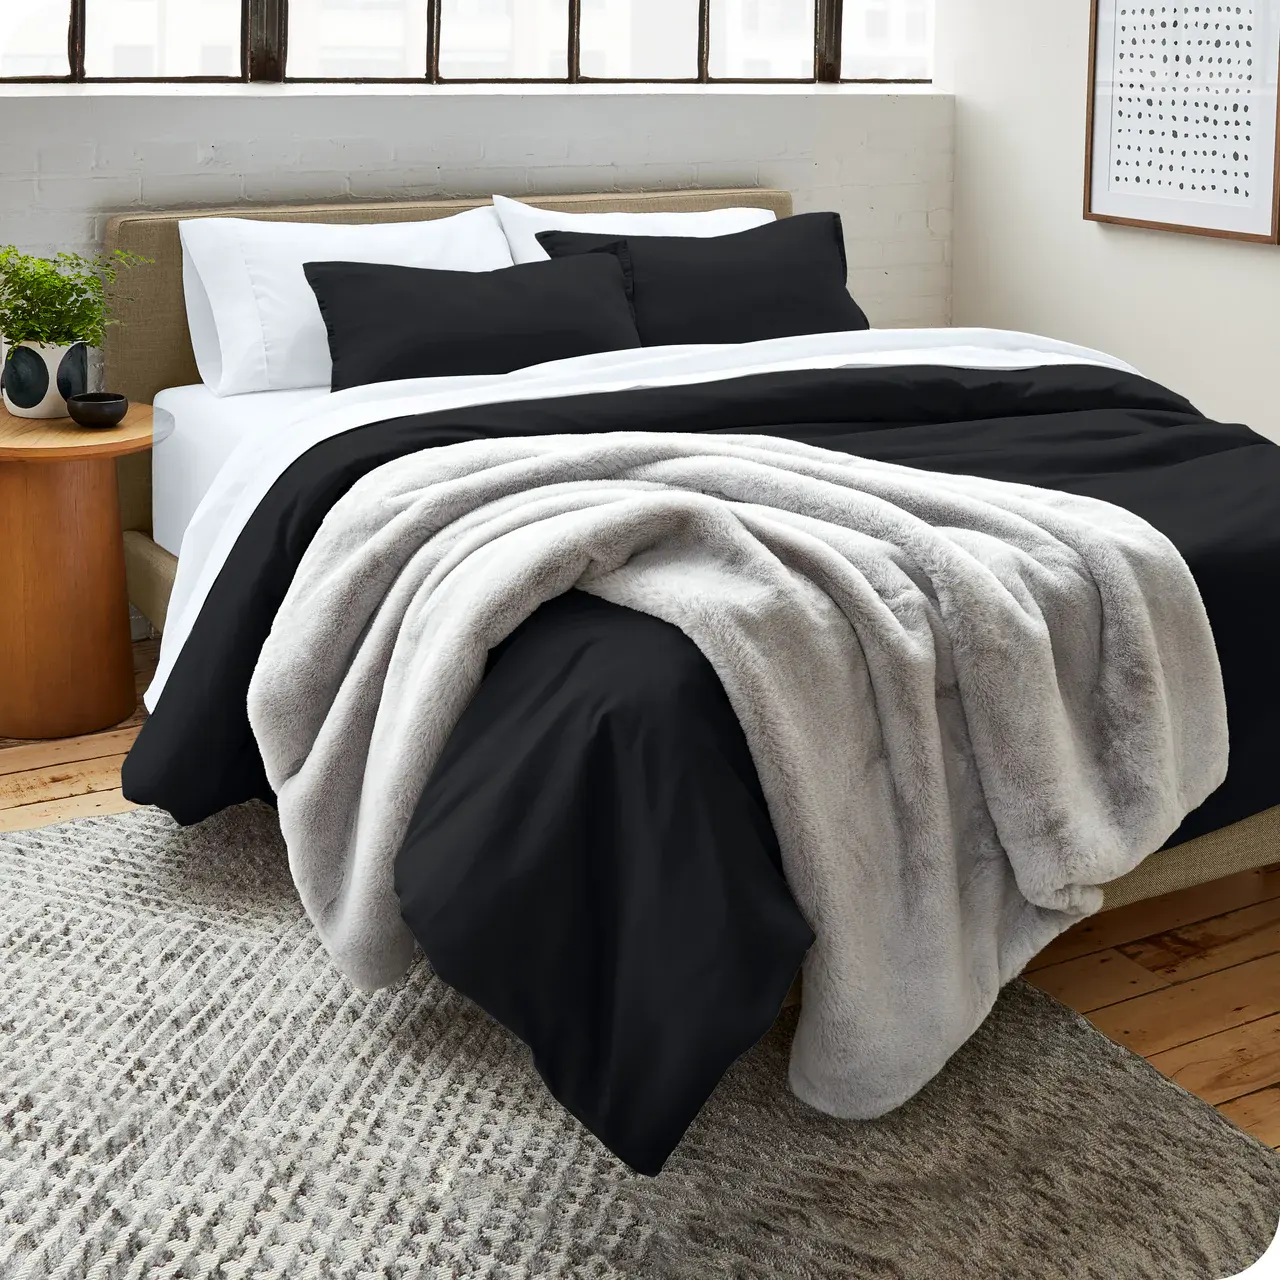 4 Piece Home tấm sợi nhỏ gối Duvet cover sets đối với Comforter bedsheet bedding Set